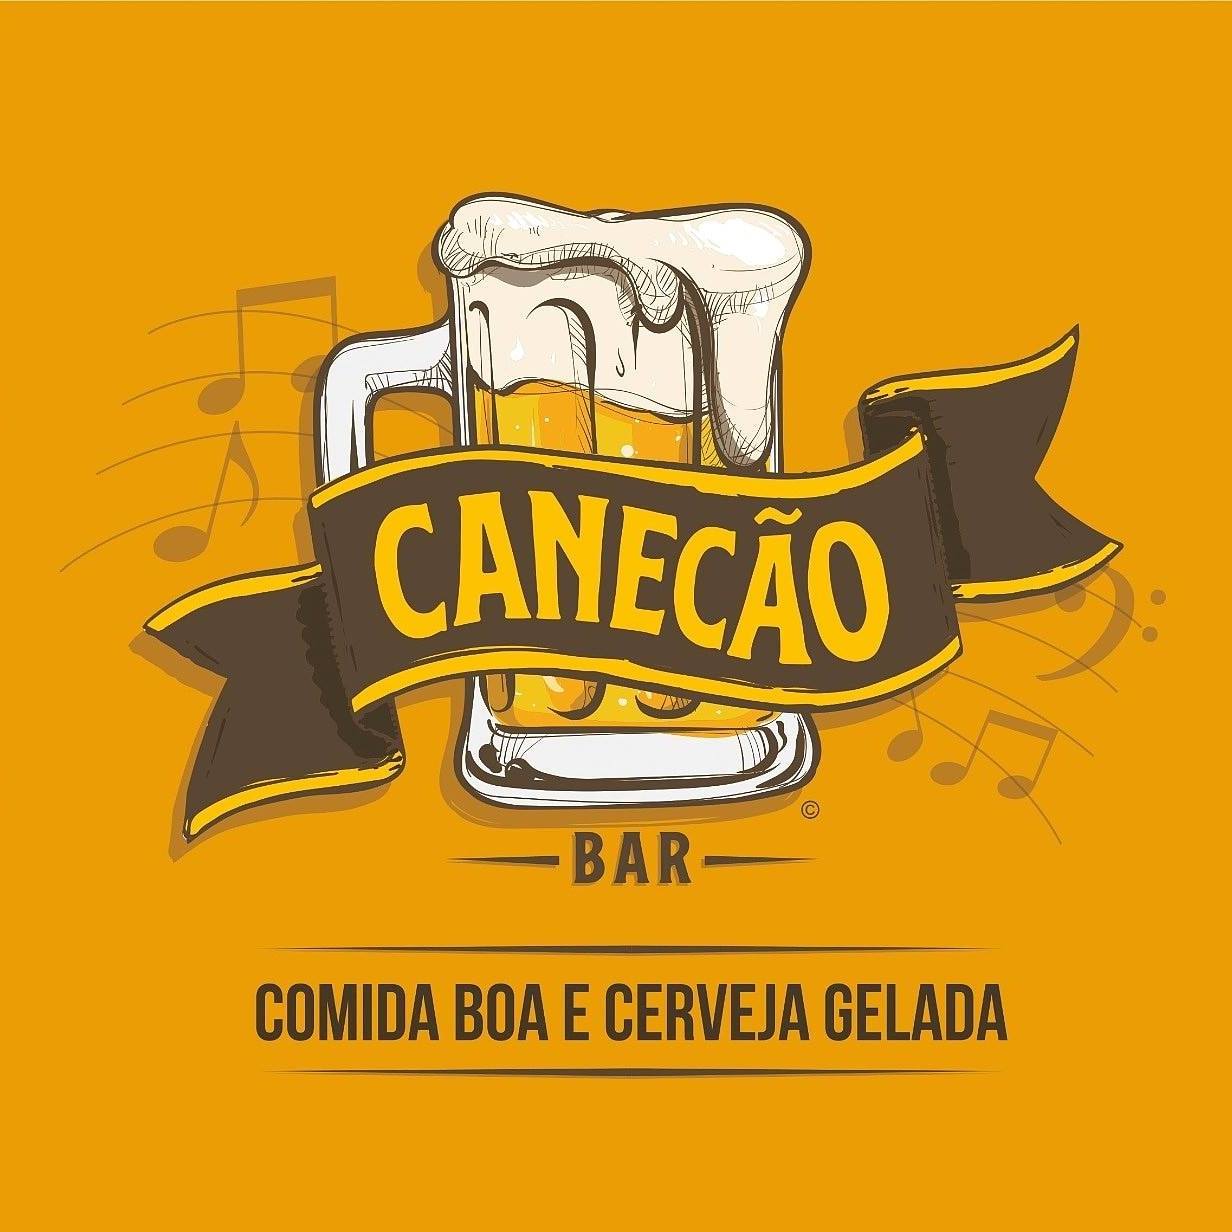 Canecão Bar